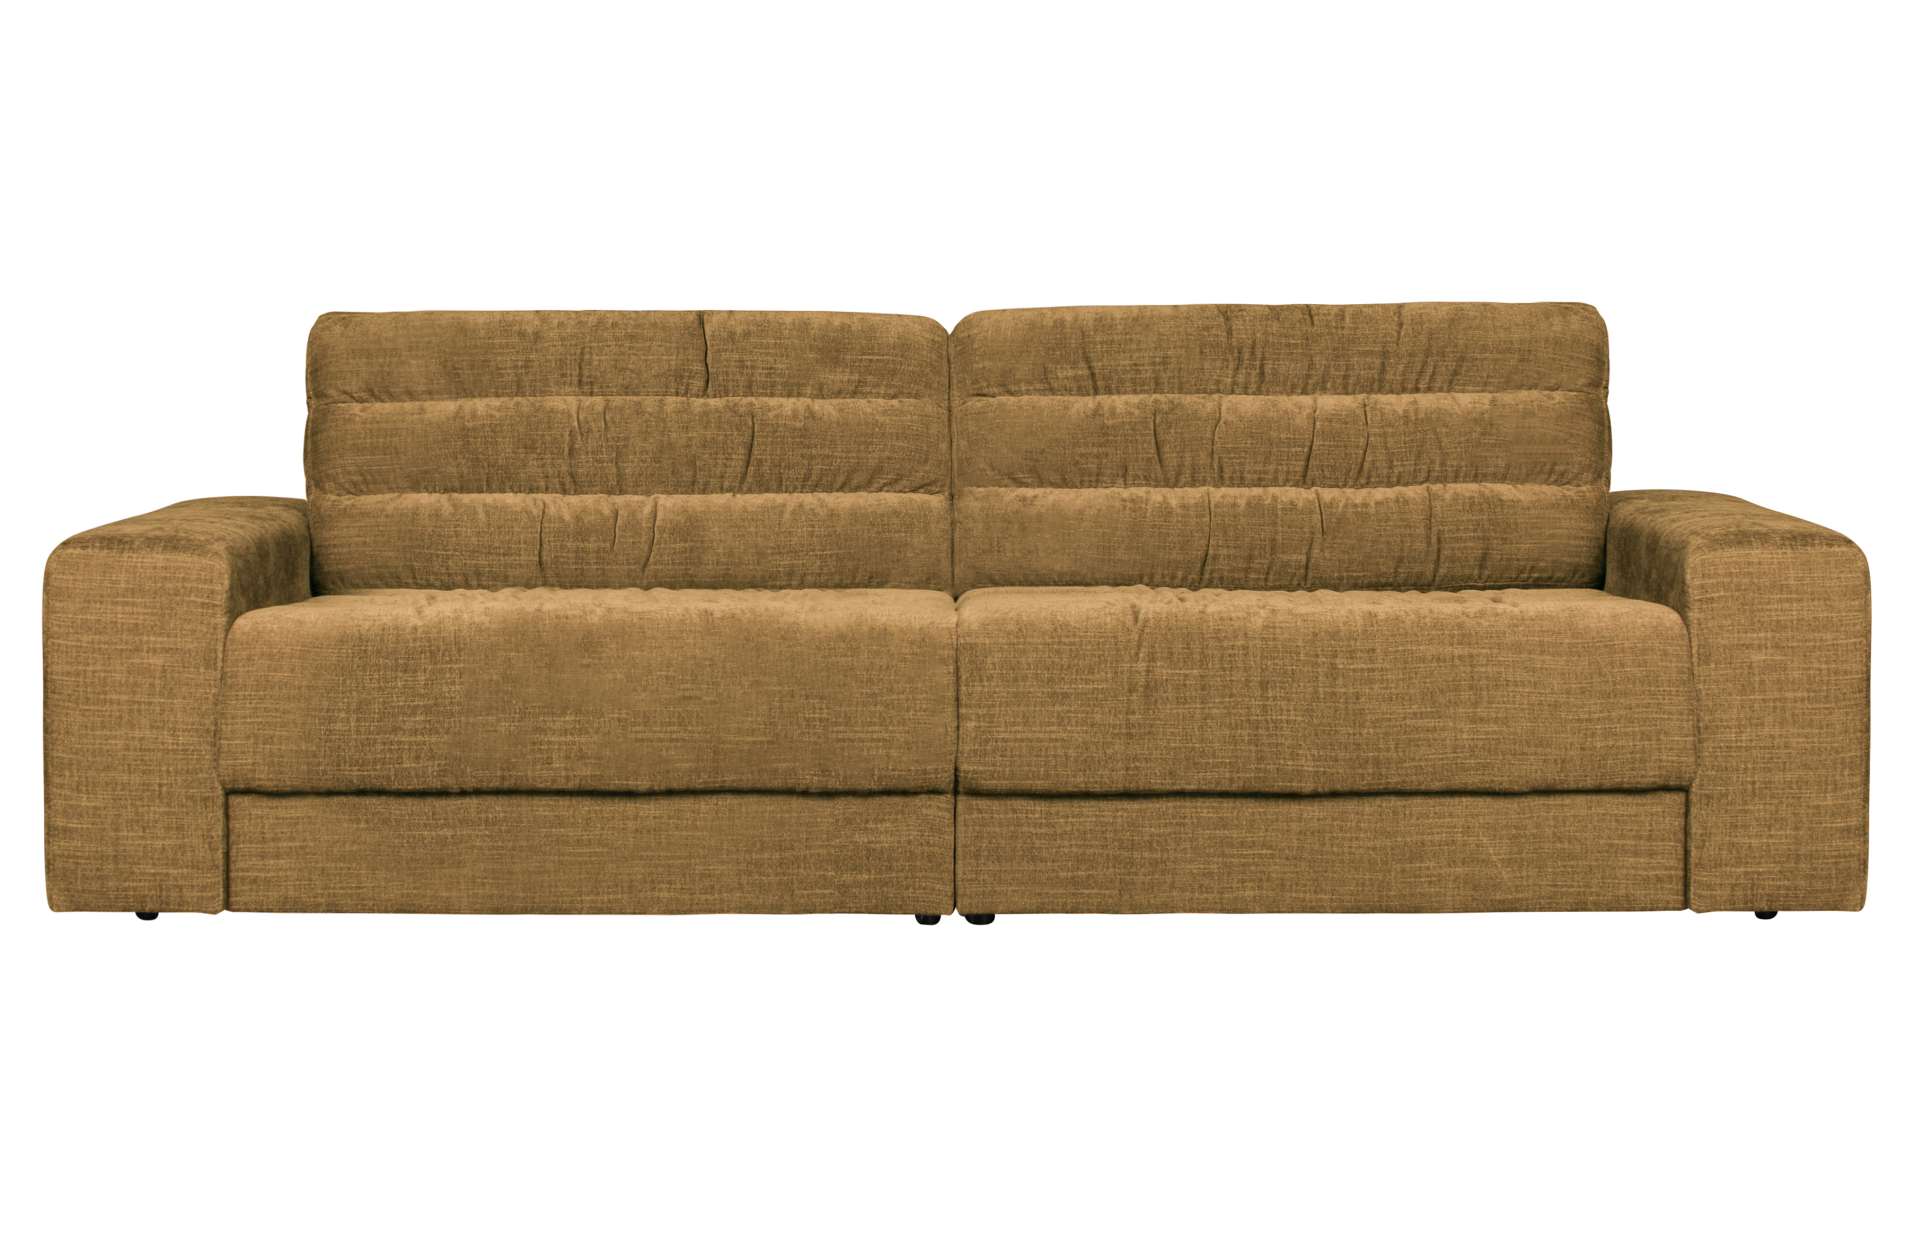 Das Sofa Date überzeugt mit seinem klassischen Design. Gefertigt wurde es aus einem Vintage Stoff, welcher einen goldenen Farbton besitzen. Das Gestell ist aus Kunststoff und hat eine schwarze Farbe. Das Sofa hat eine Breite von 226 cm.